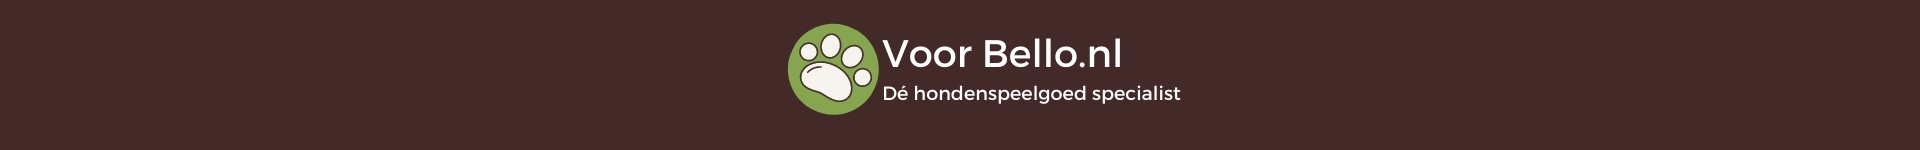 VoorBello.nls achtergrond